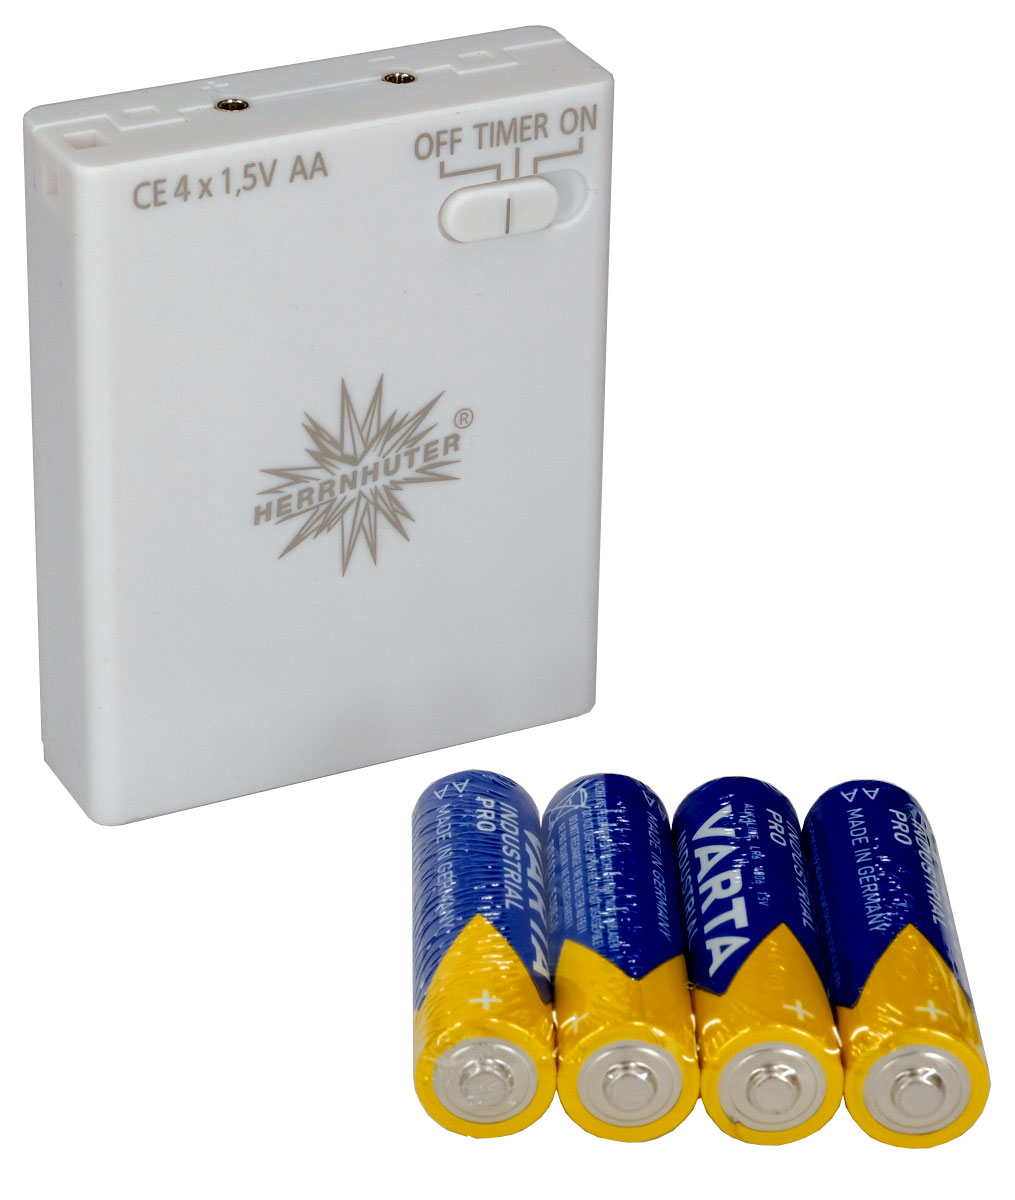 Herrnhuter Sterne Batteriehalter mit Timer inkl. 4 Mignon AA Batterien-/bilder/big/dscf4740.jpg